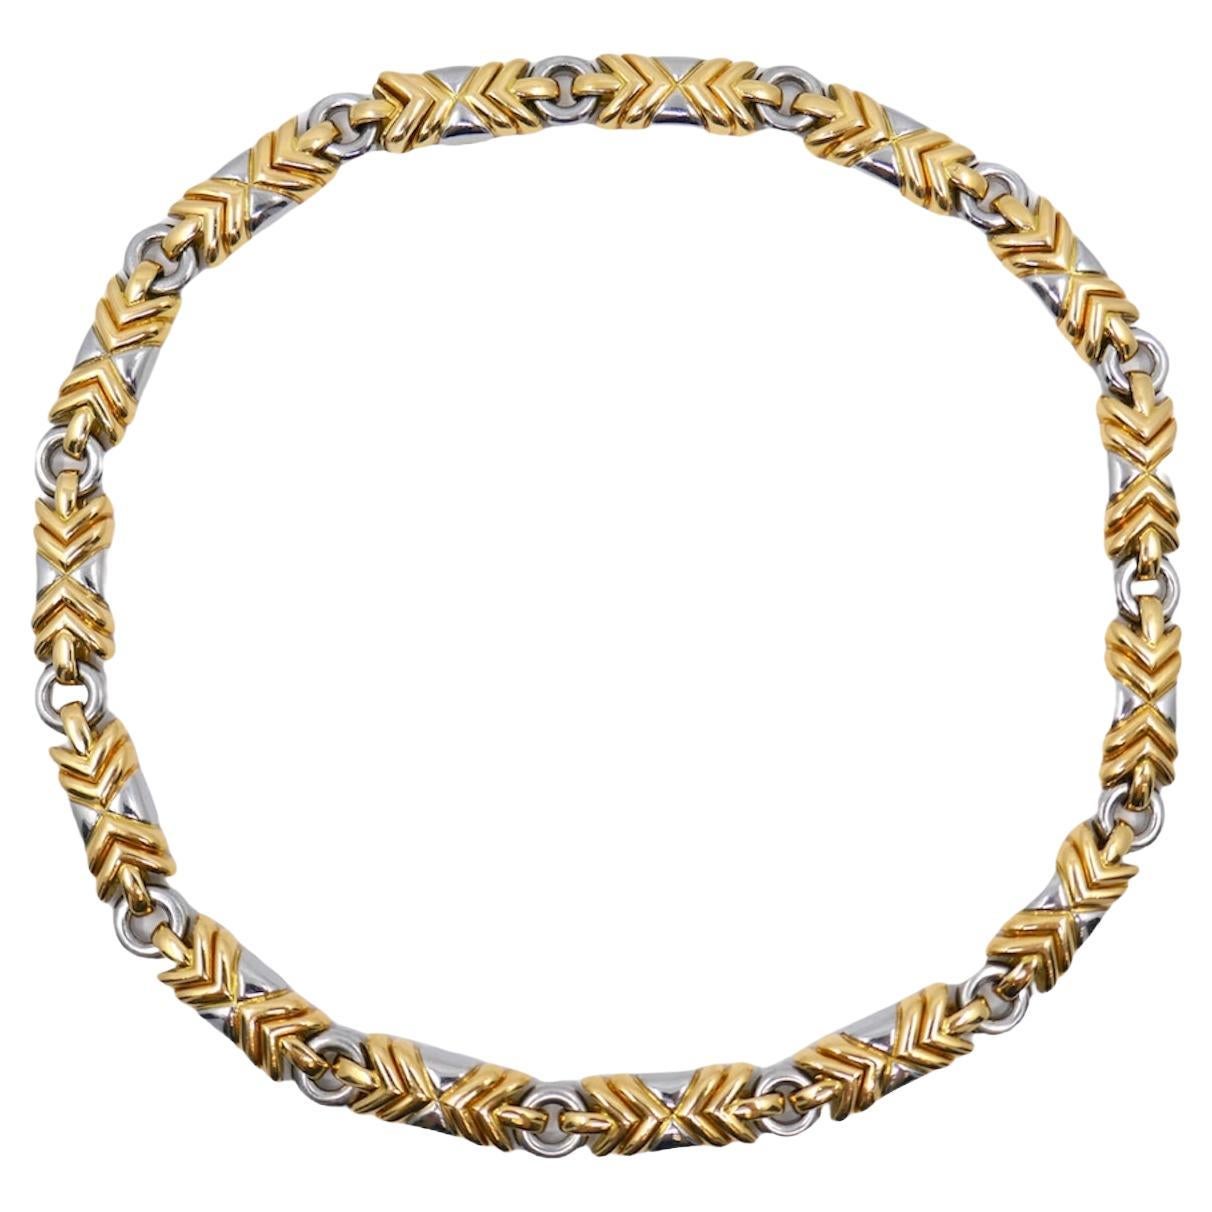 Bvlgari Trika Necklace Two-tone White & Yellow 18k Gold